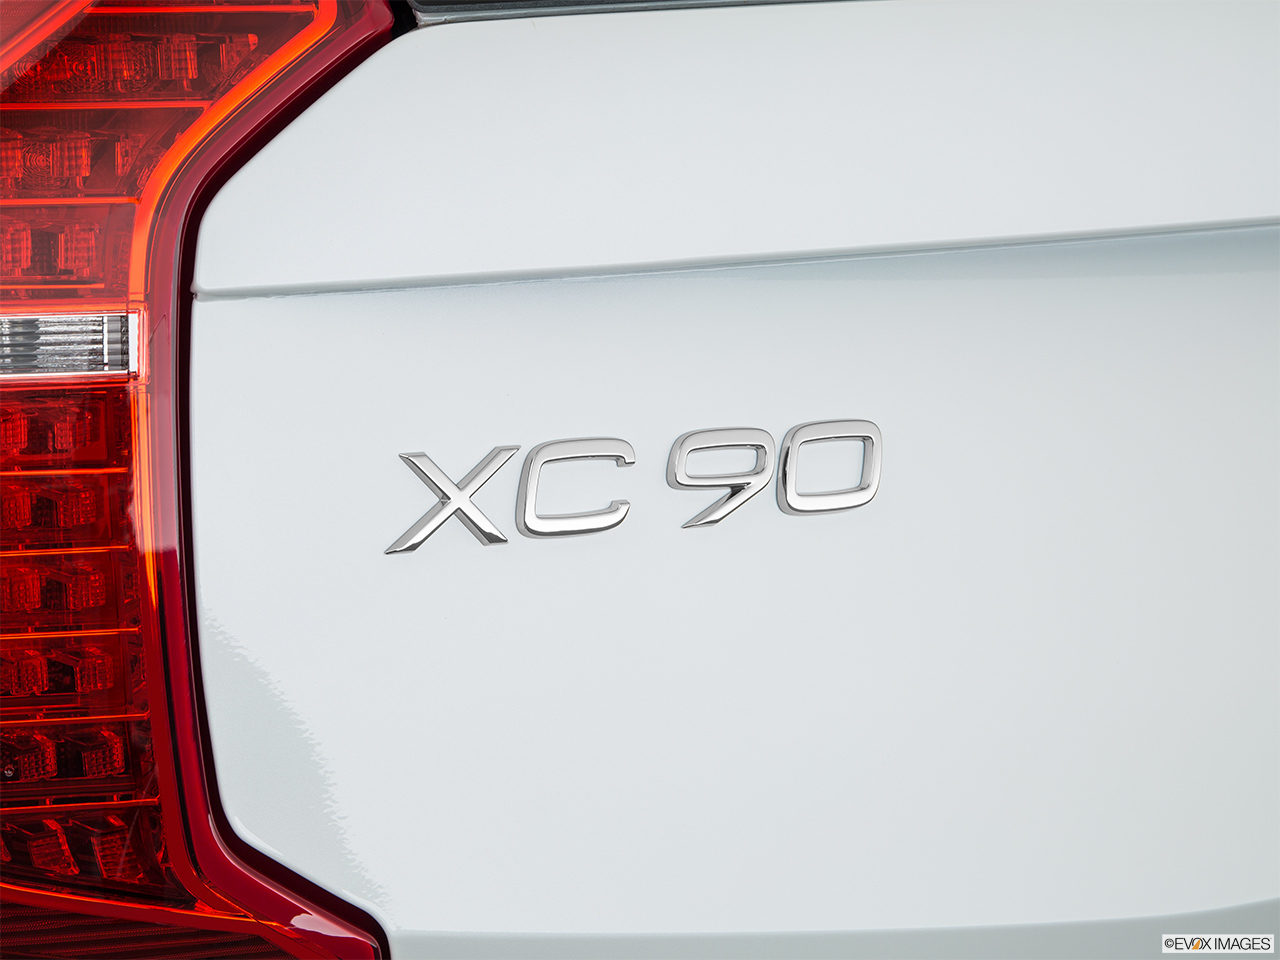 2018 Volvo XC90 T8 Inscription eAWD Plug-in Hybrid Rear model badge/emblem 